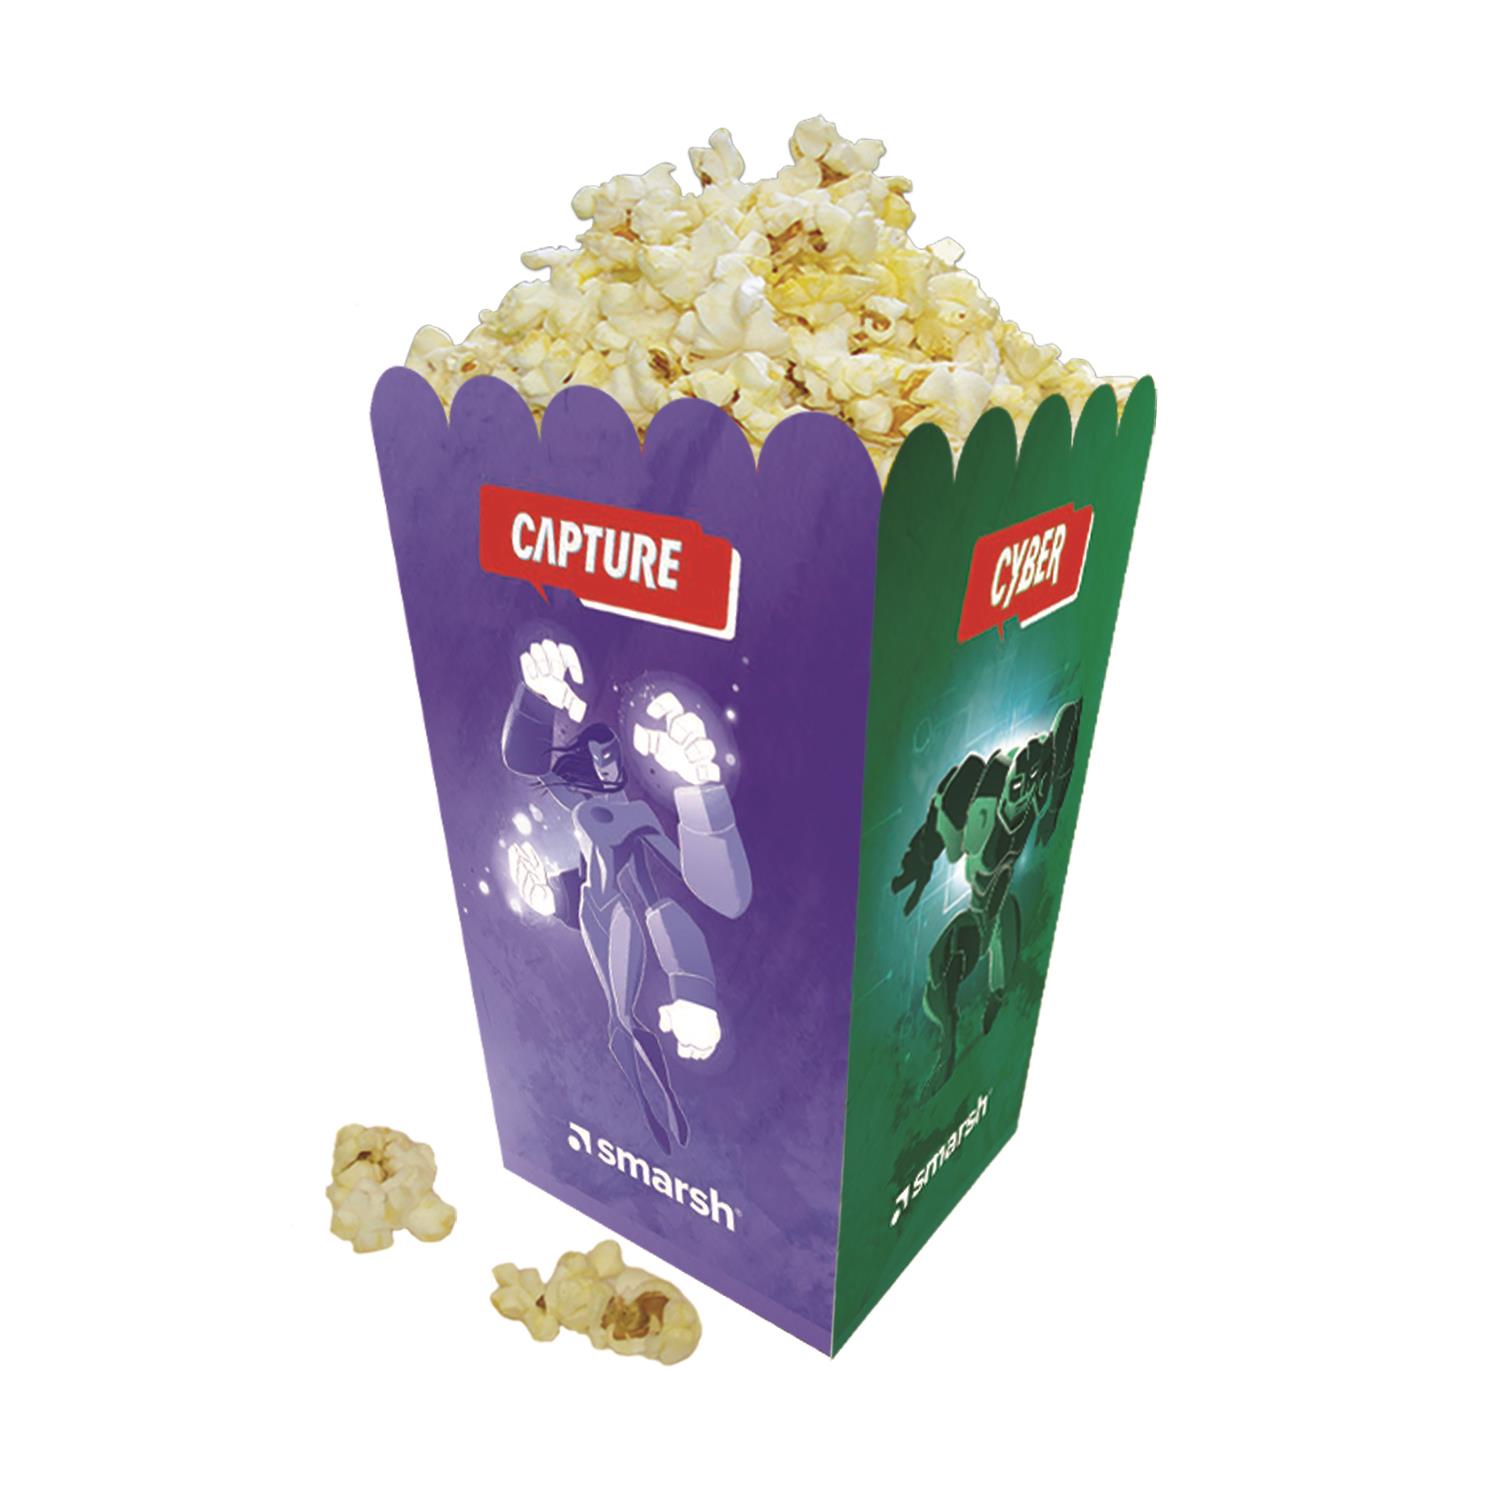 FPSB-10D Small Scoop Popcorn Box Full Color 32 oz